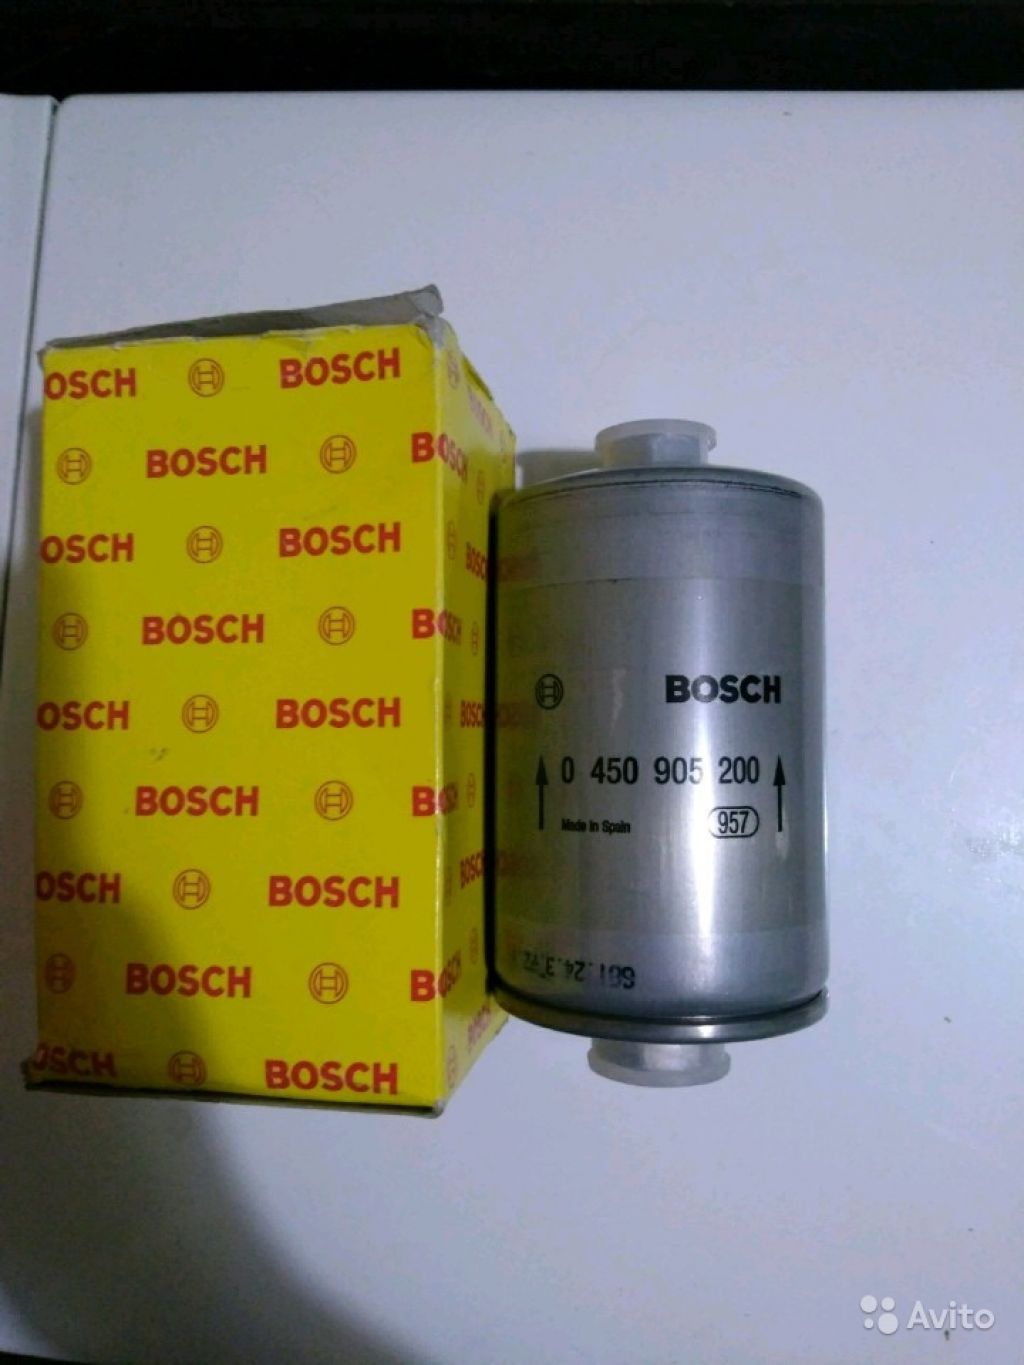 Фильтр топливный Bosch F 5200 0450905200 в Москве. Фото 1